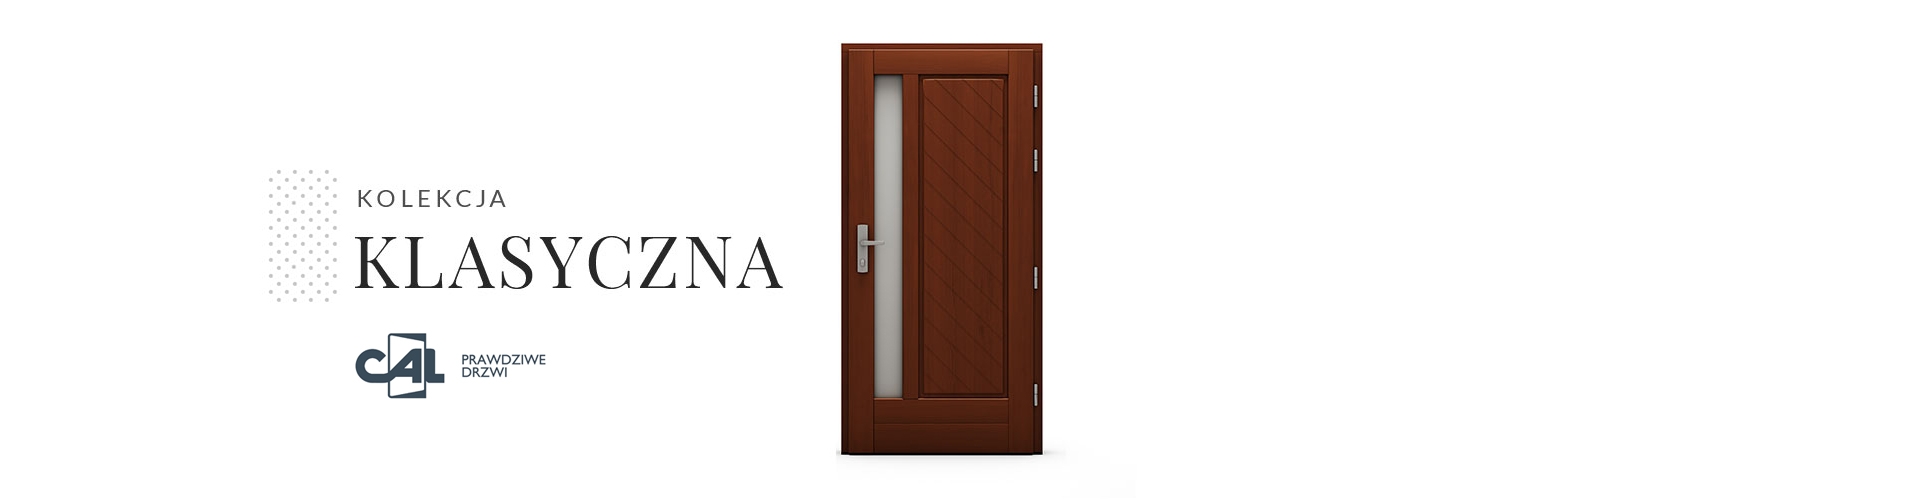 Kolekcja drzwi drewnianych Klasyczna, model Równica